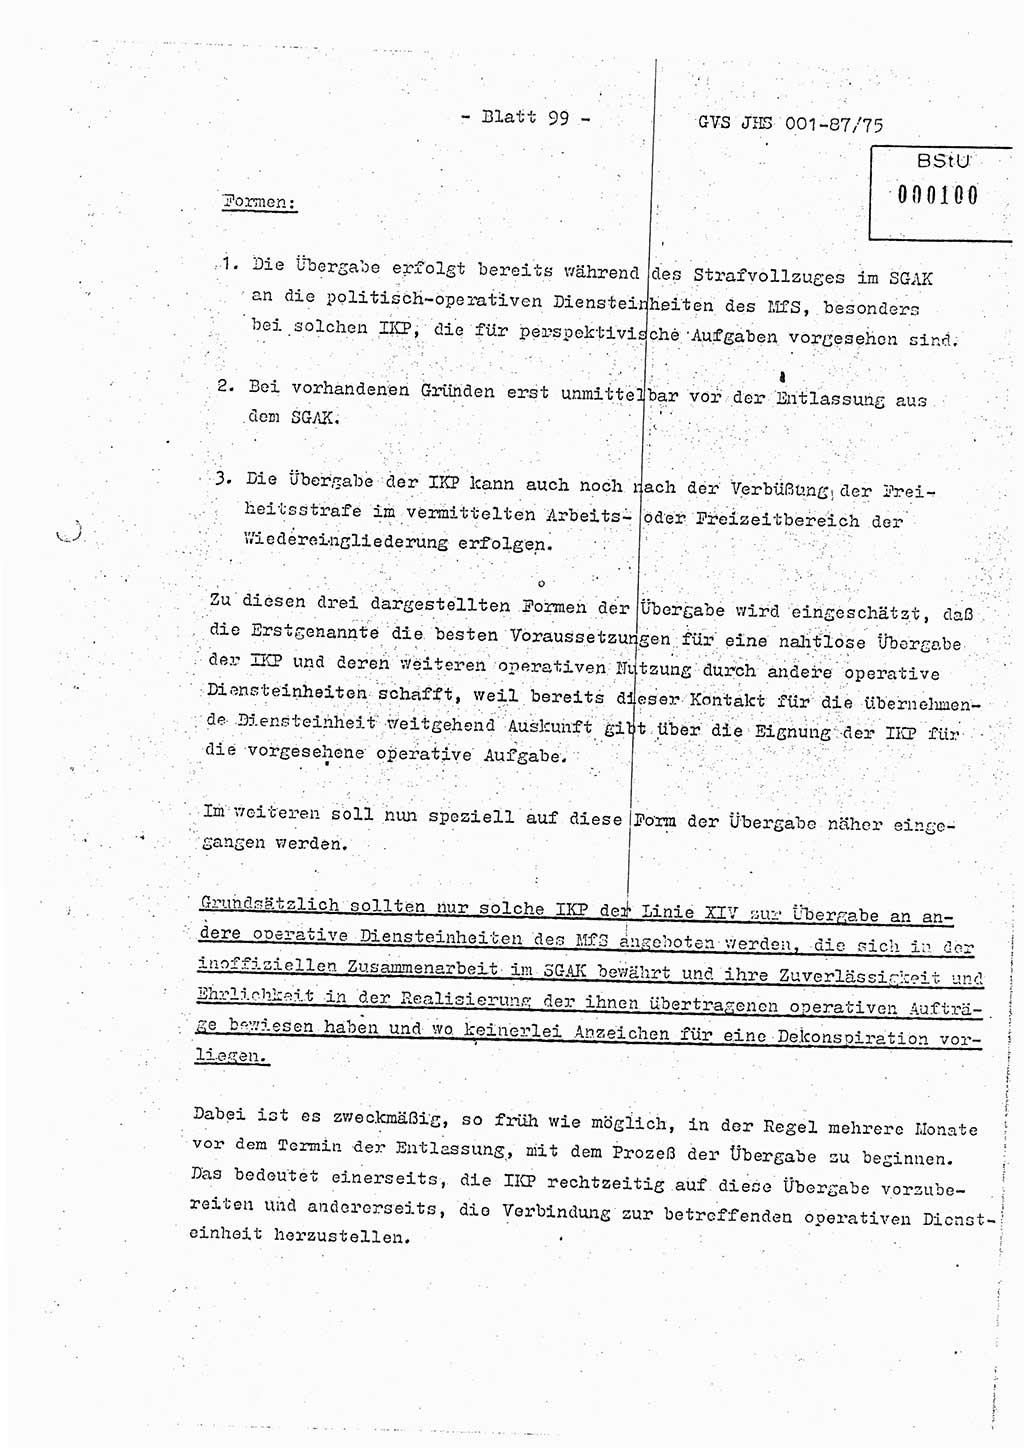 Diplomarbeit Hauptmann Volkmar Heinz (Abt. ⅩⅣ), Oberleutnant Lothar Rüdiger (BV Lpz. Abt. Ⅺ), Ministerium für Staatssicherheit (MfS) [Deutsche Demokratische Republik (DDR)], Juristische Hochschule (JHS), Geheime Verschlußsache (GVS) o001-87/75, Potsdam 1975, Seite 99 (Dipl.-Arb. MfS DDR JHS GVS o001-87/75 1975, S. 99)